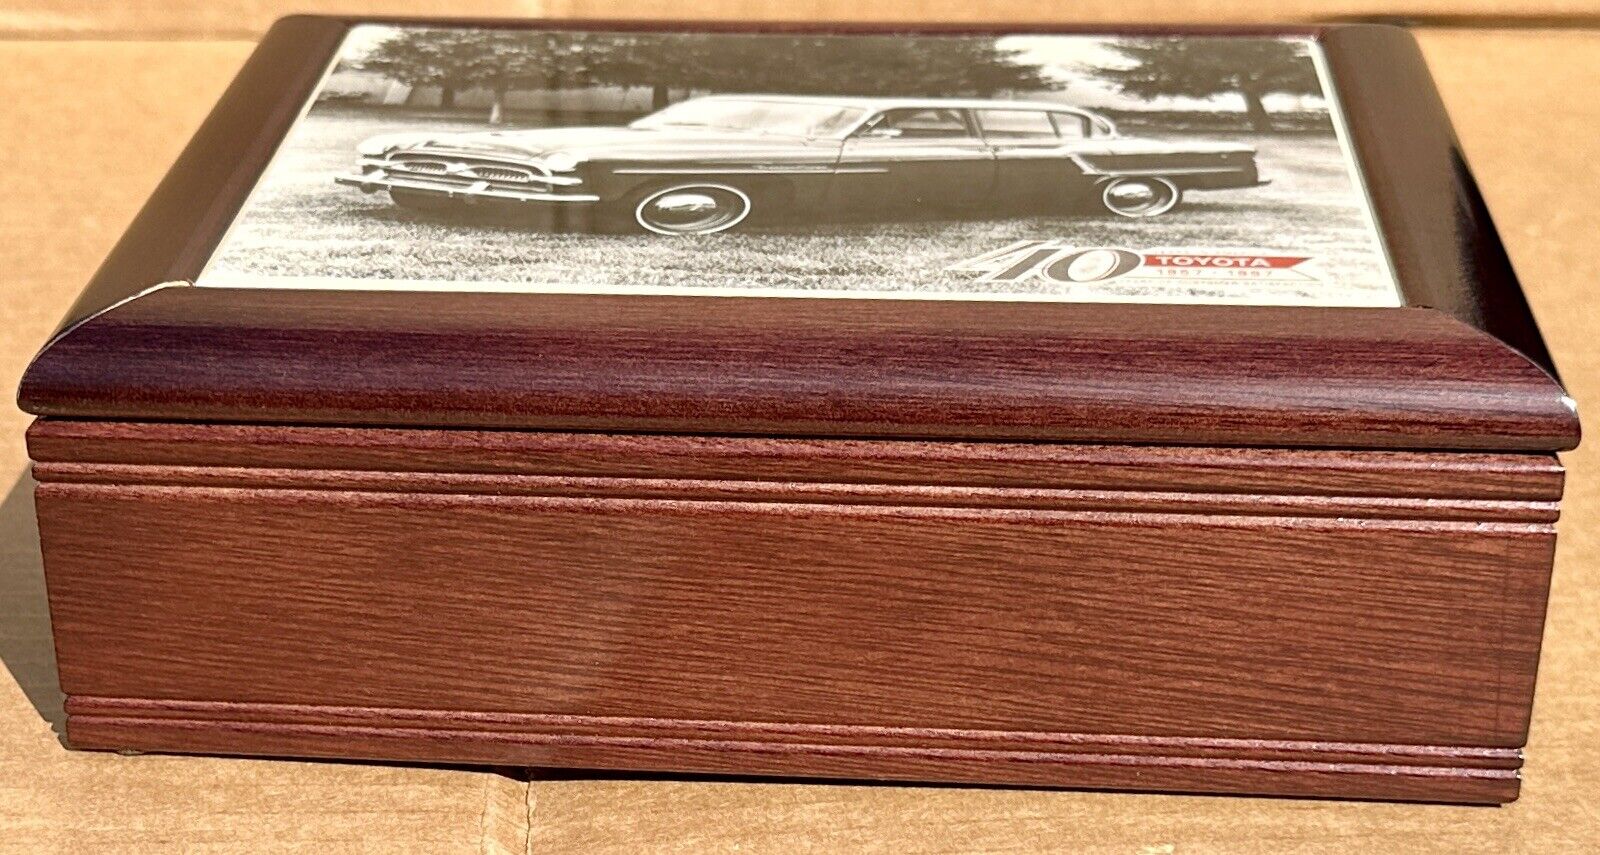 Nice Toyota Crown Tiled Wood Cigar Box 40 Years in America 1957-1997 Trinket NIB